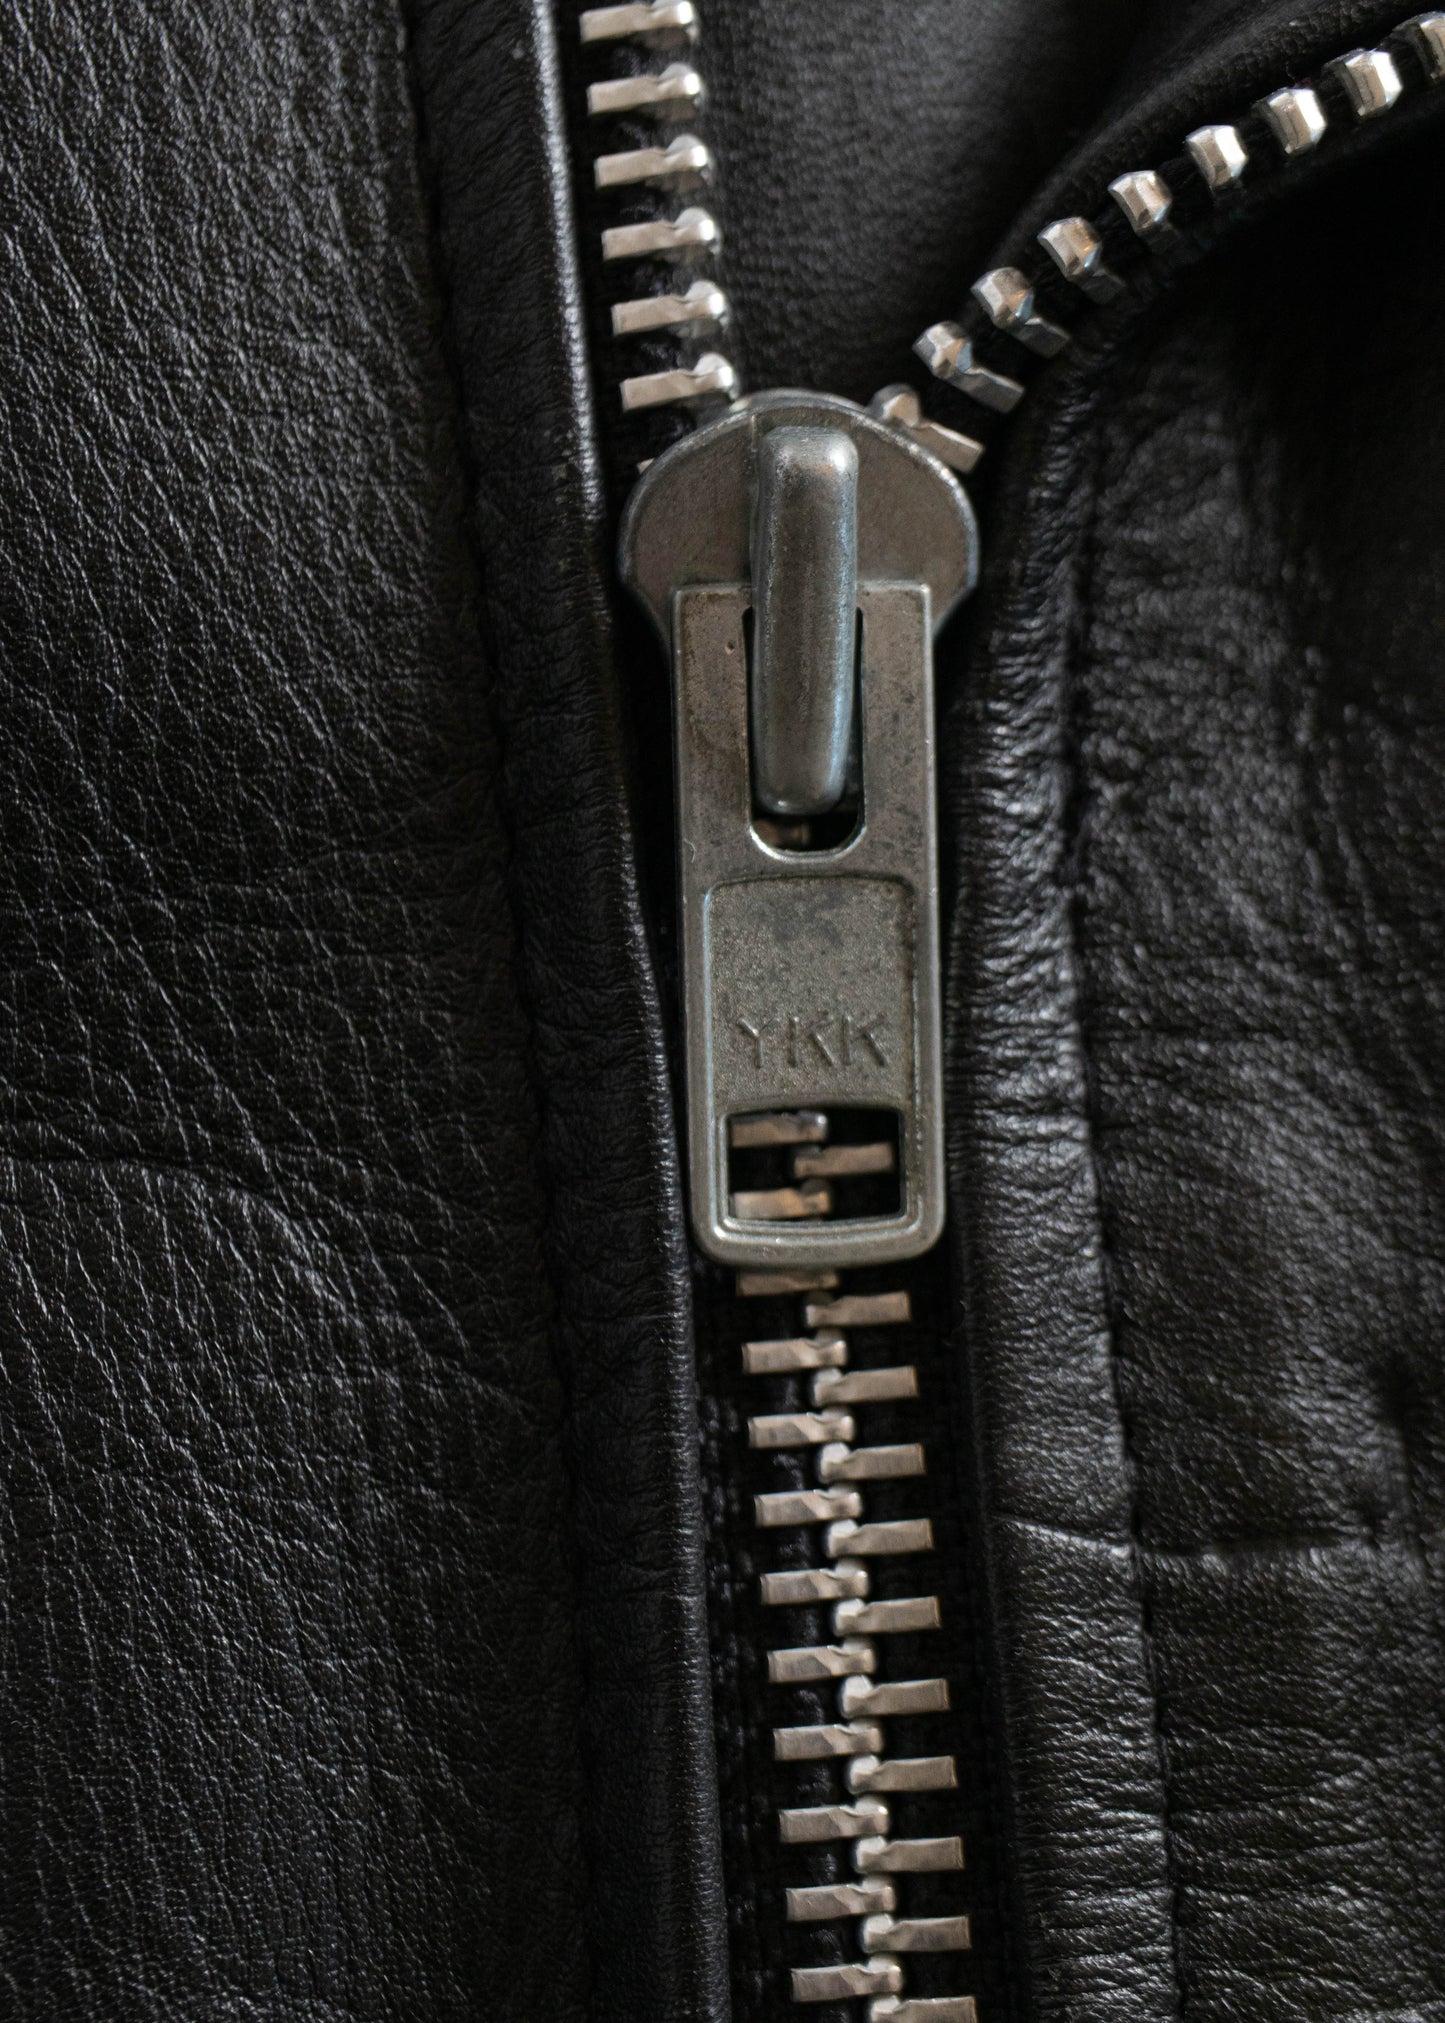 1980s UK Leather Moto Jacket Size S/M